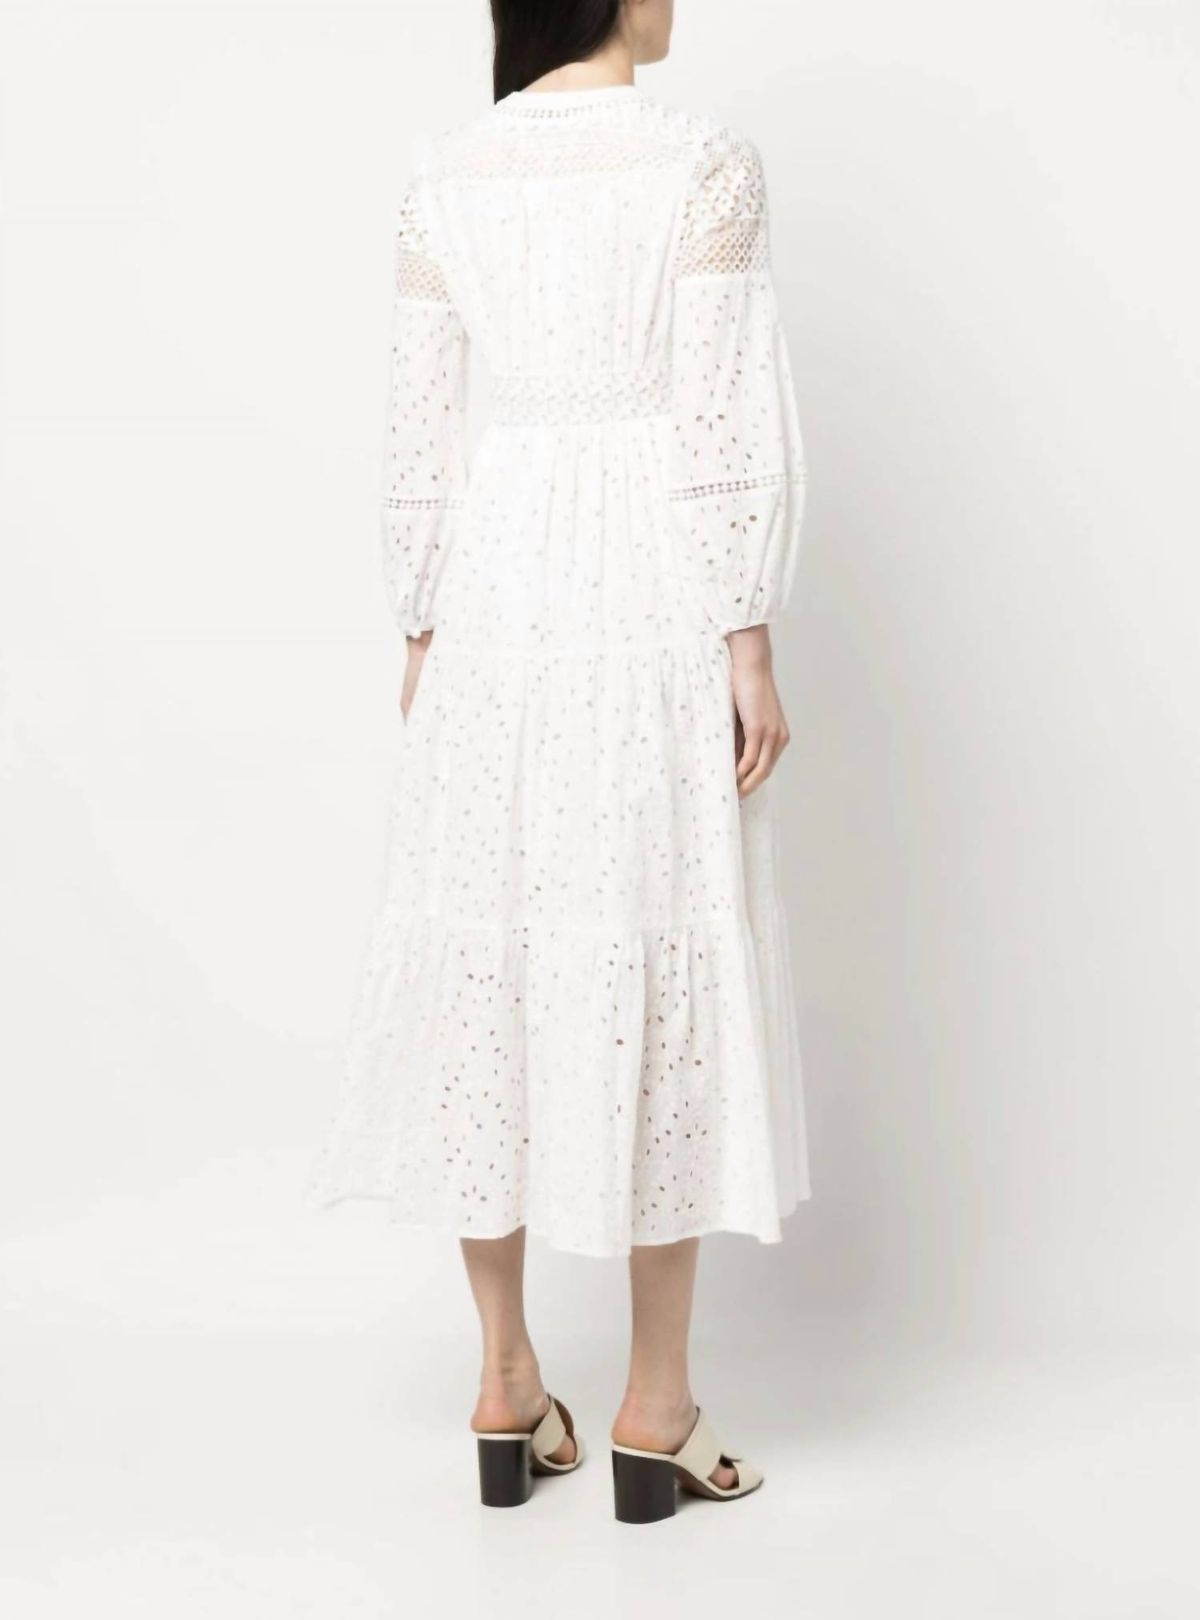 Style 1-1580596419-1901 Diane von Furstenberg Size 6 Sheer White Cocktail Dress on Queenly